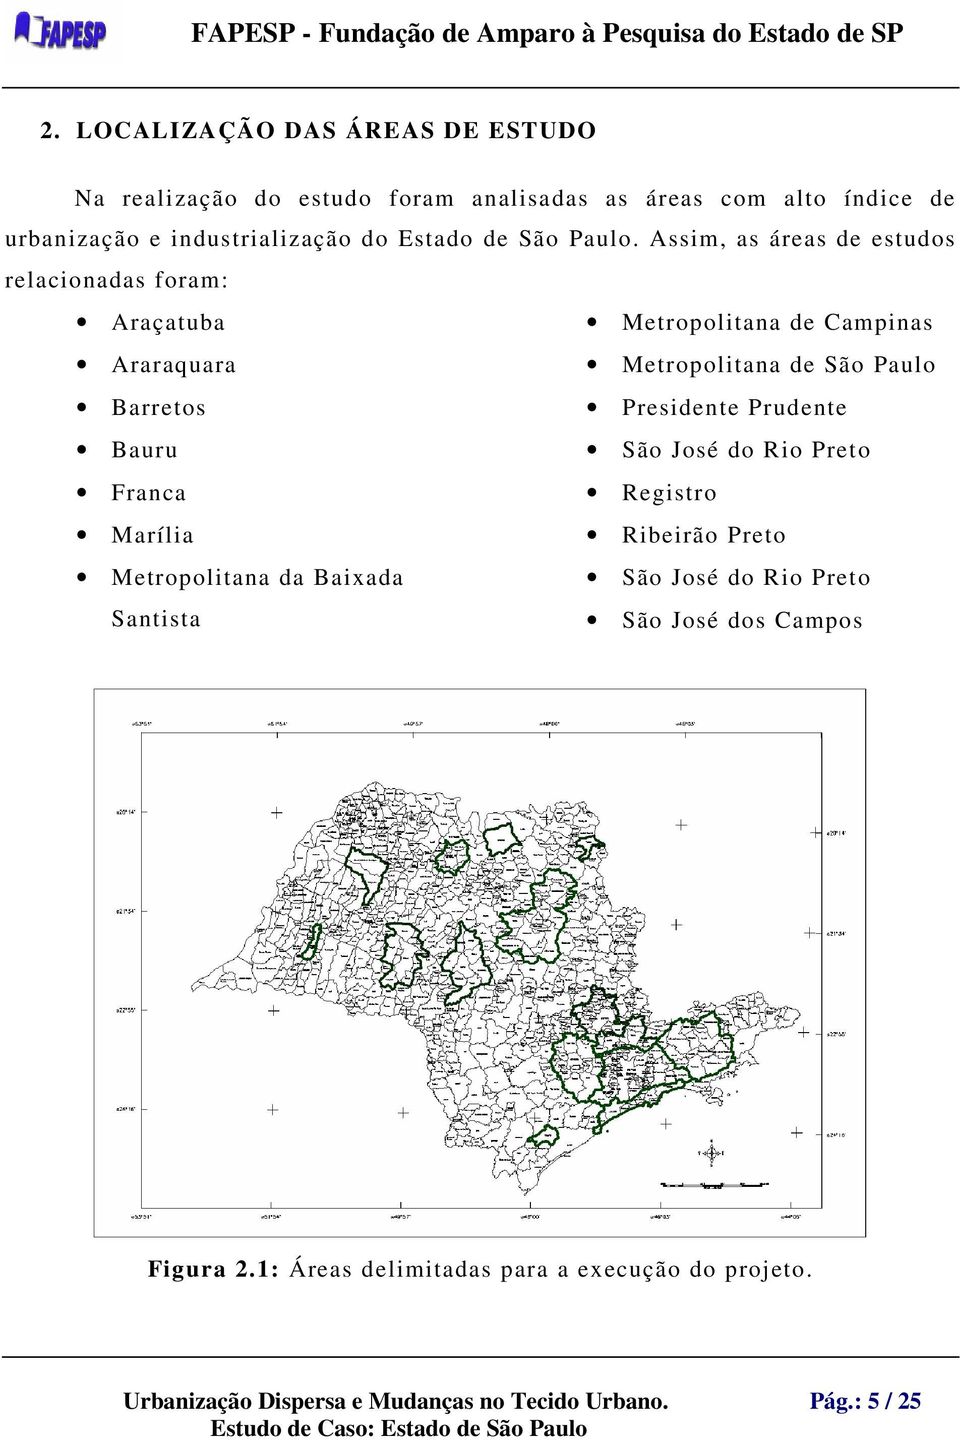 Assim, as áreas de estudos relacionadas foram: Araçatuba Metropolitana de Campinas Araraquara Metropolitana de São Paulo Barretos